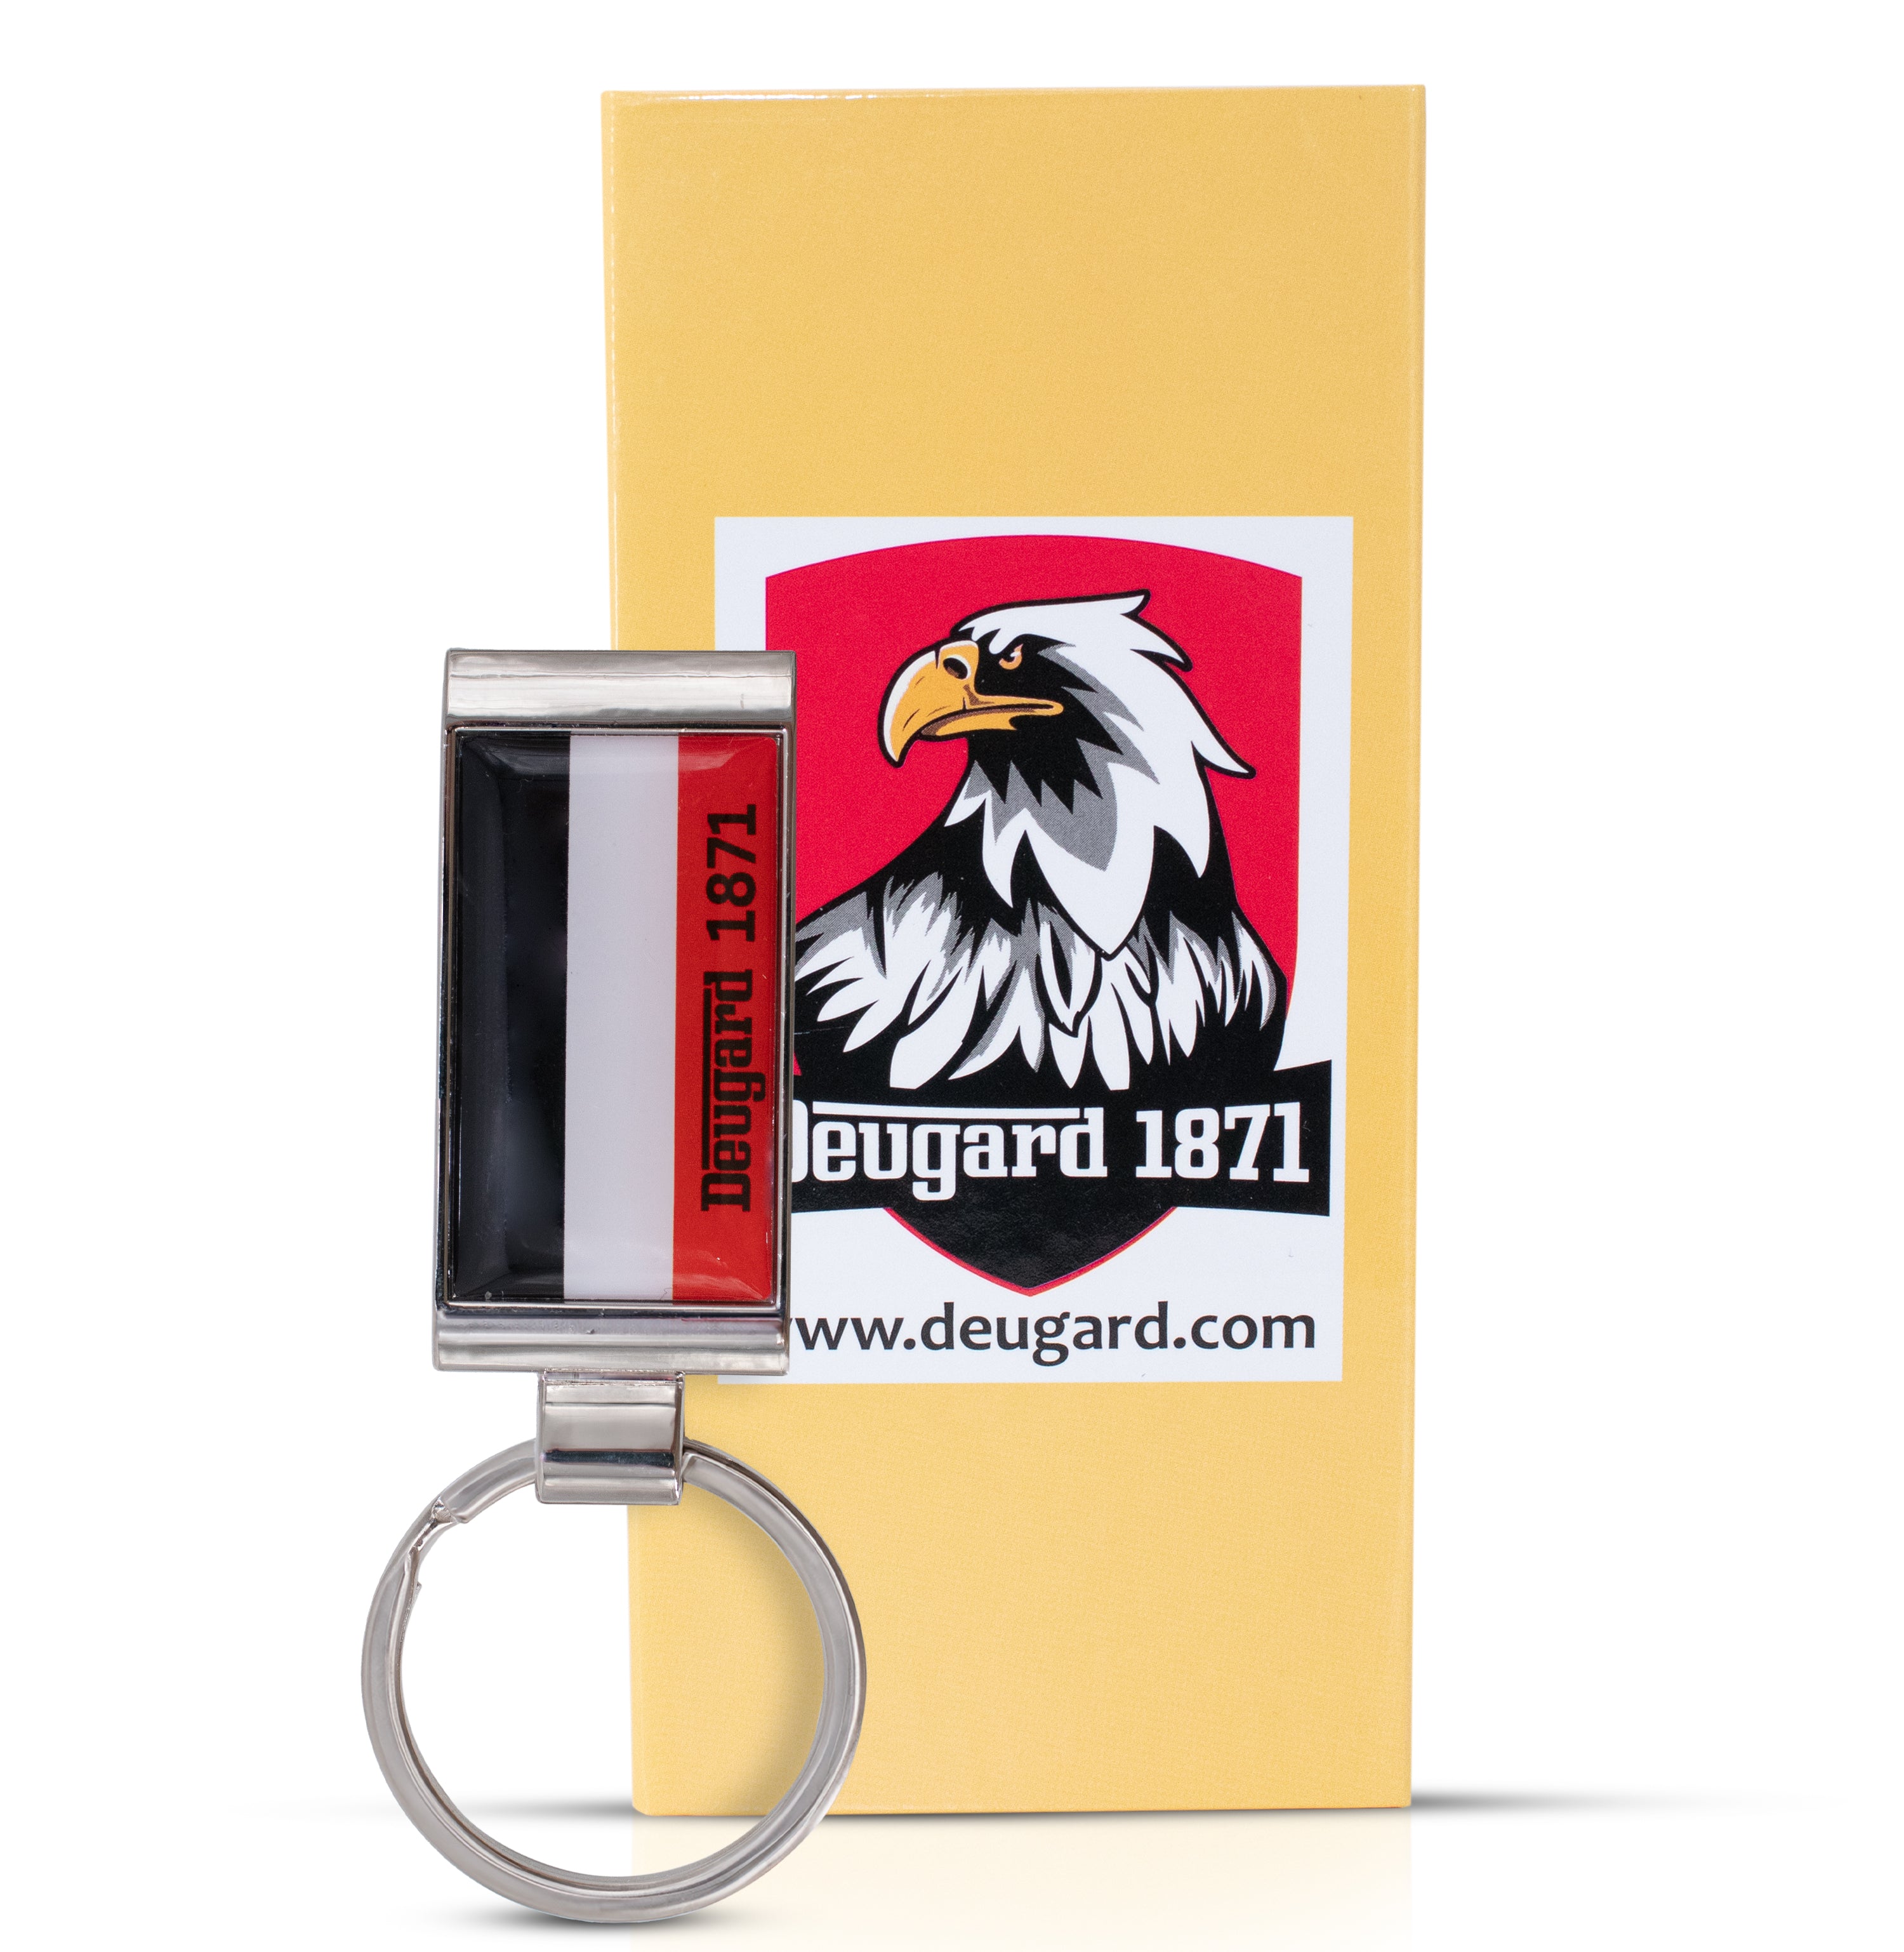 Schlüsselanhänger aus Metall mit Silikonpatch in schwarz-weiß-rot, gelbe Geschenkbox